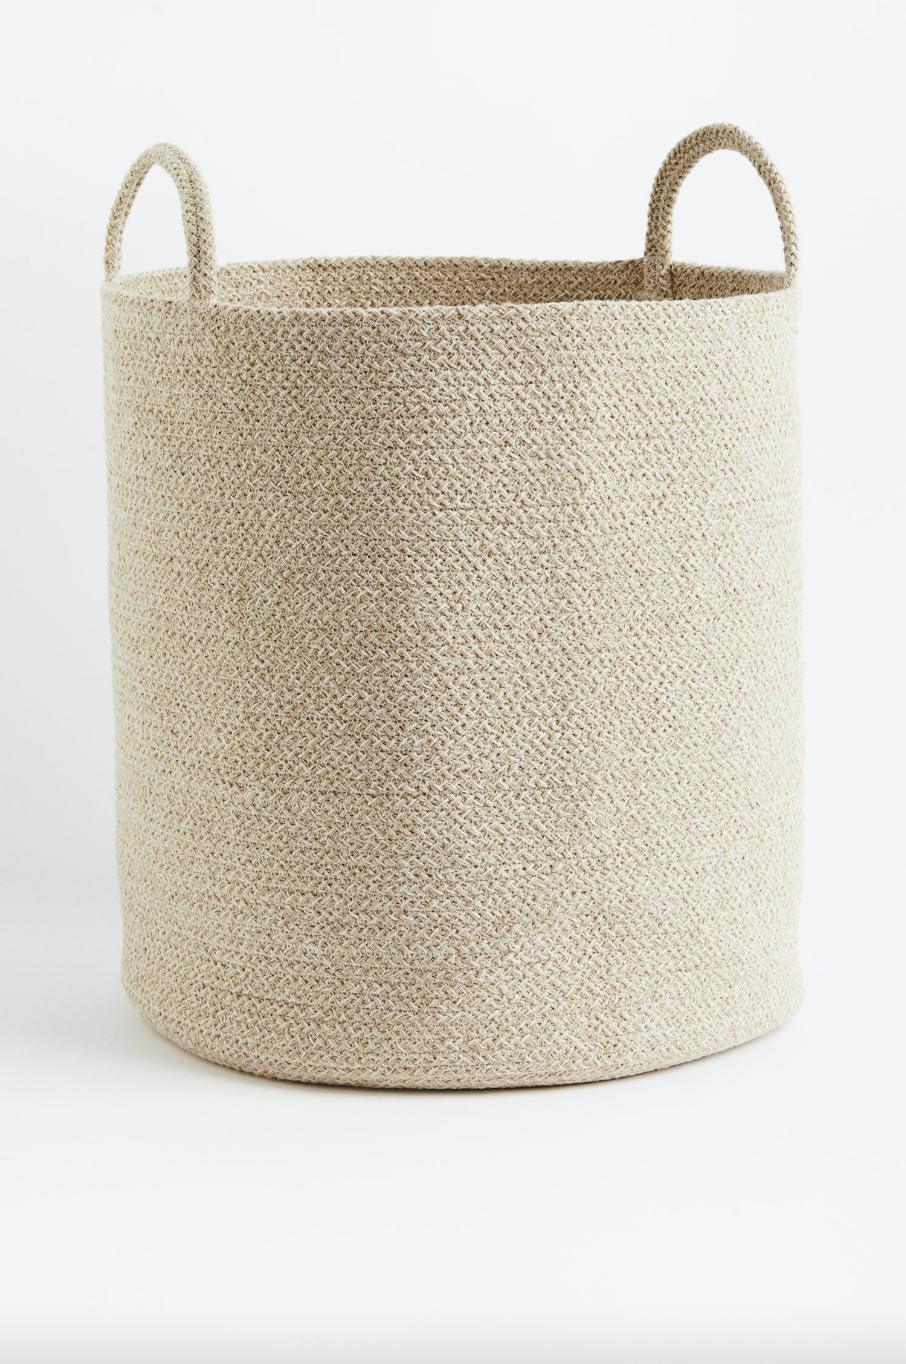 Cotton storage basket